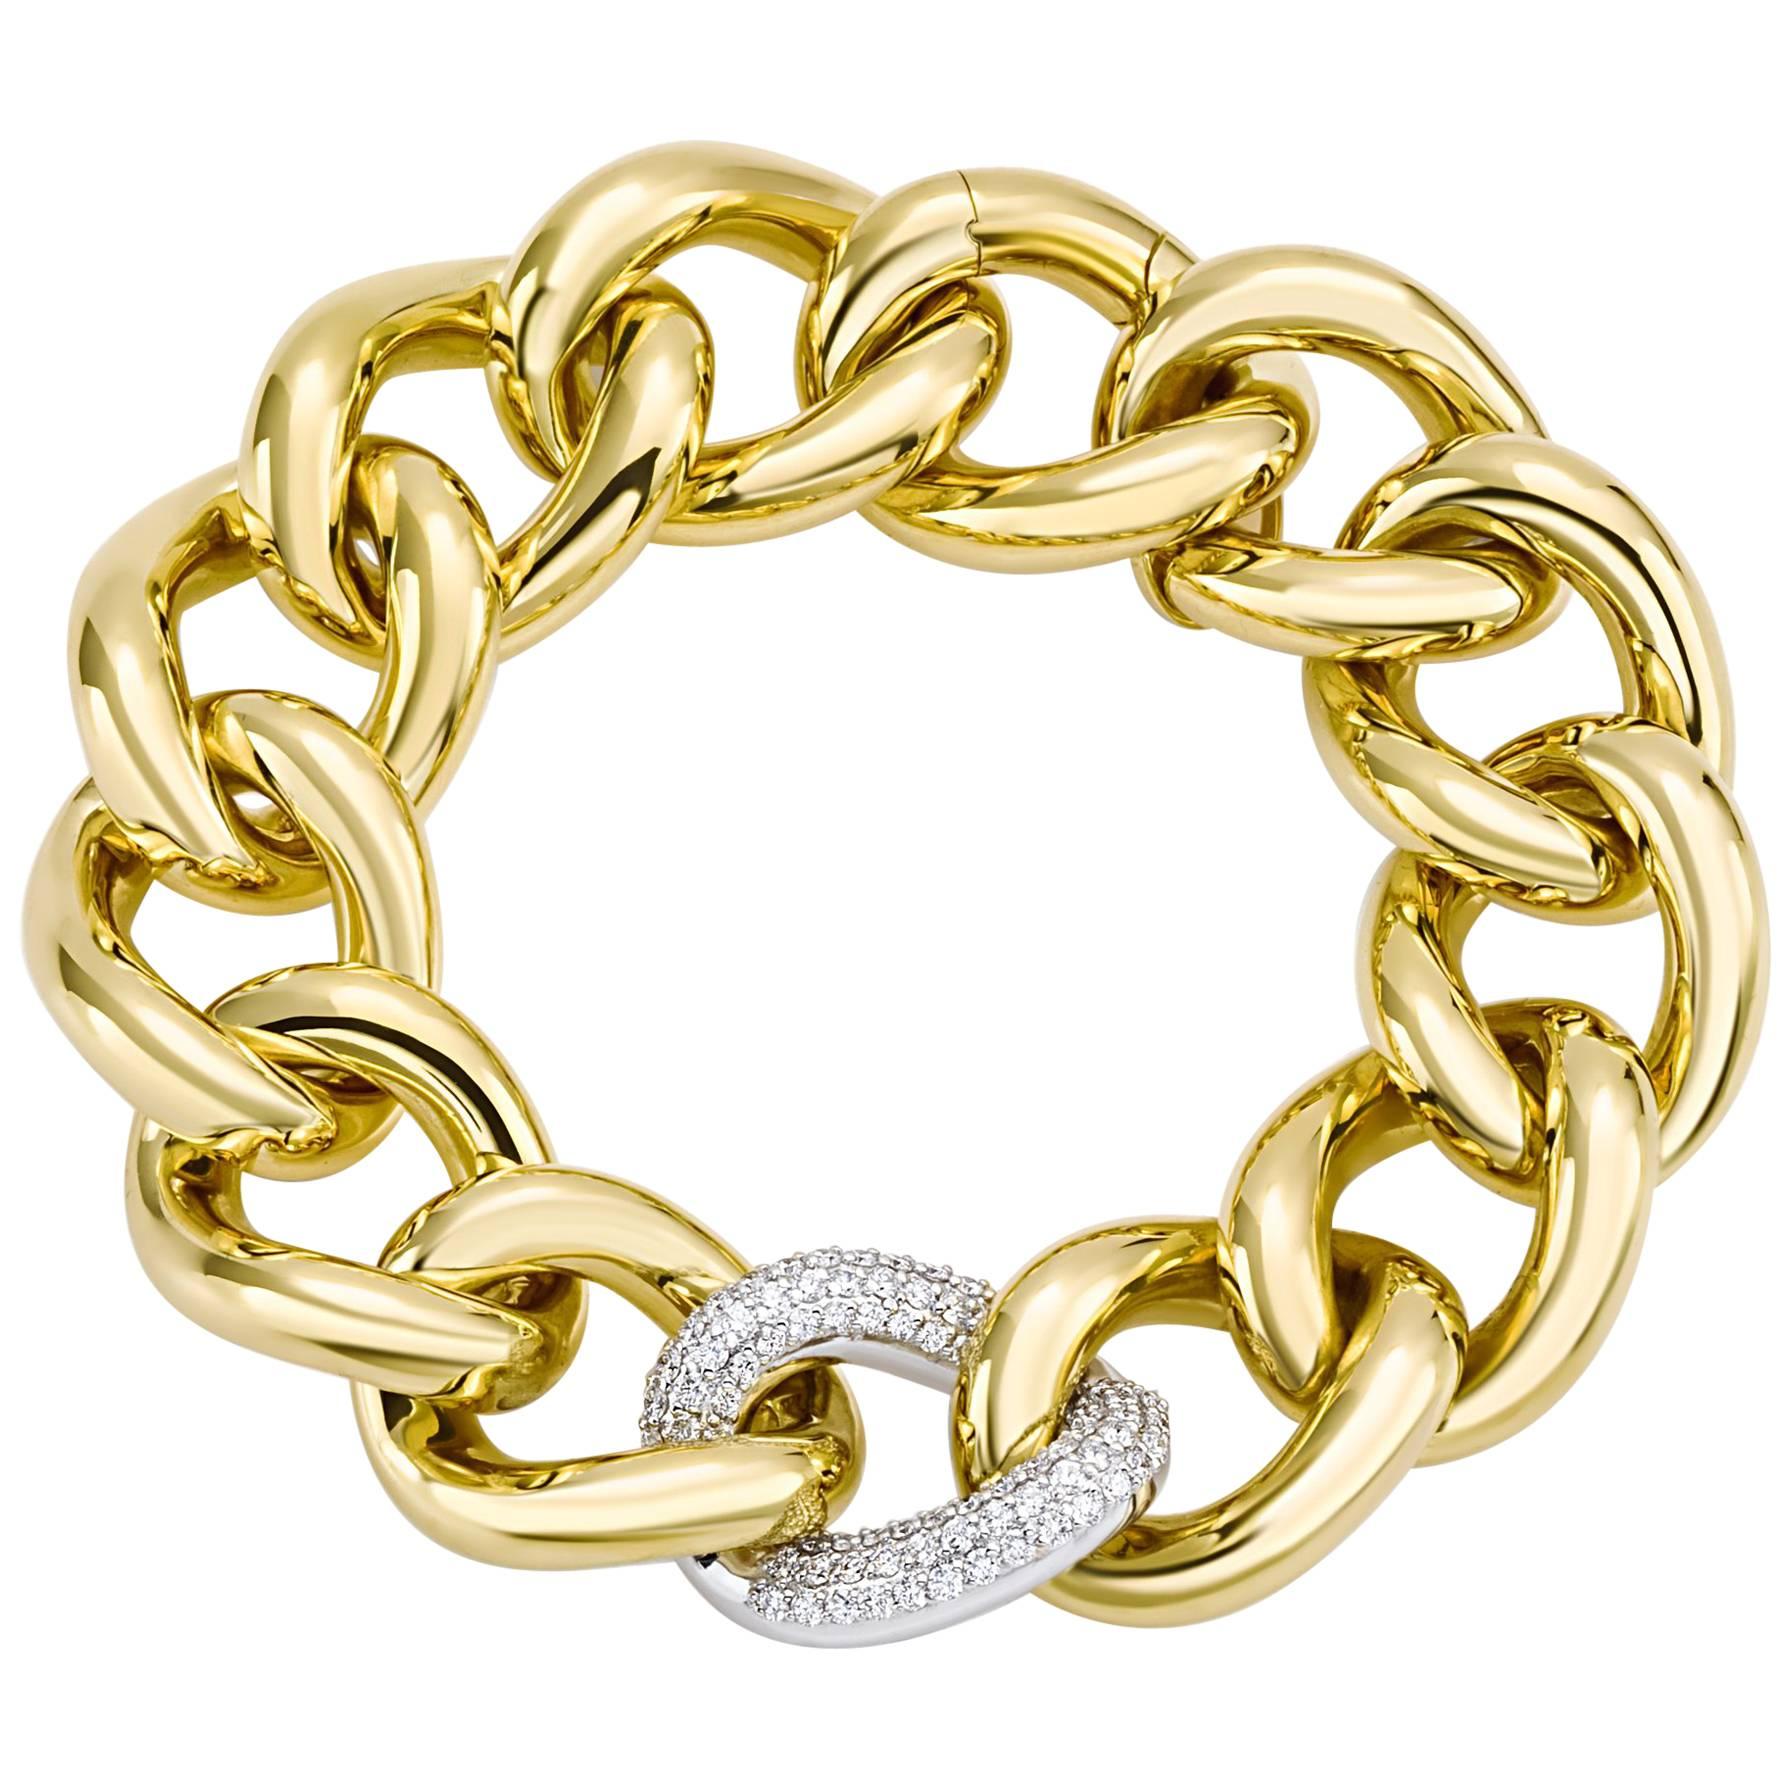 Klassisches klassisches Groumette-Armband aus 18 Karat Gelbgold und weißen Diamanten